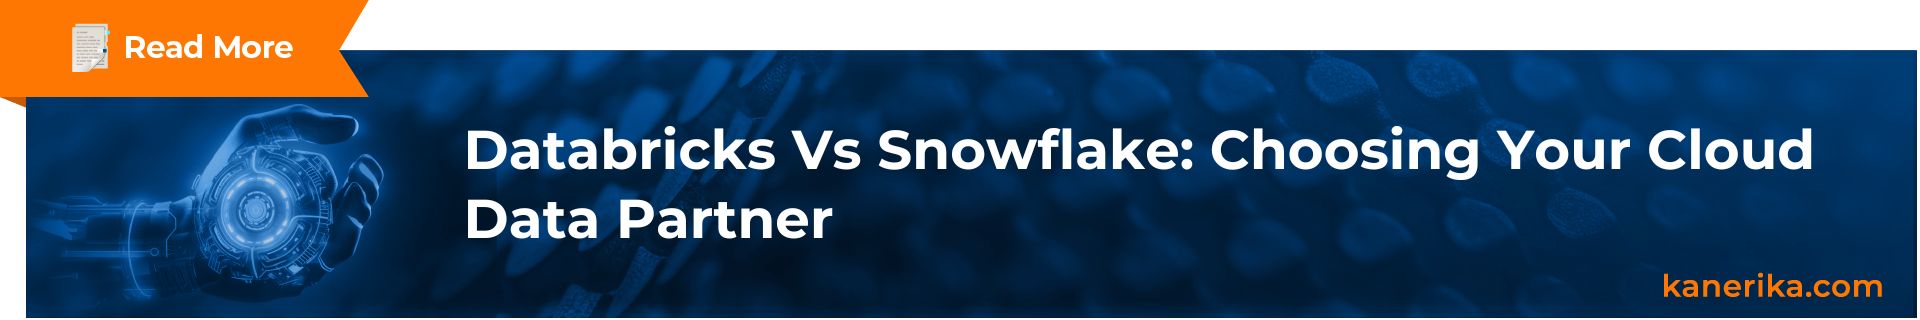 Databricks vs Snowflake